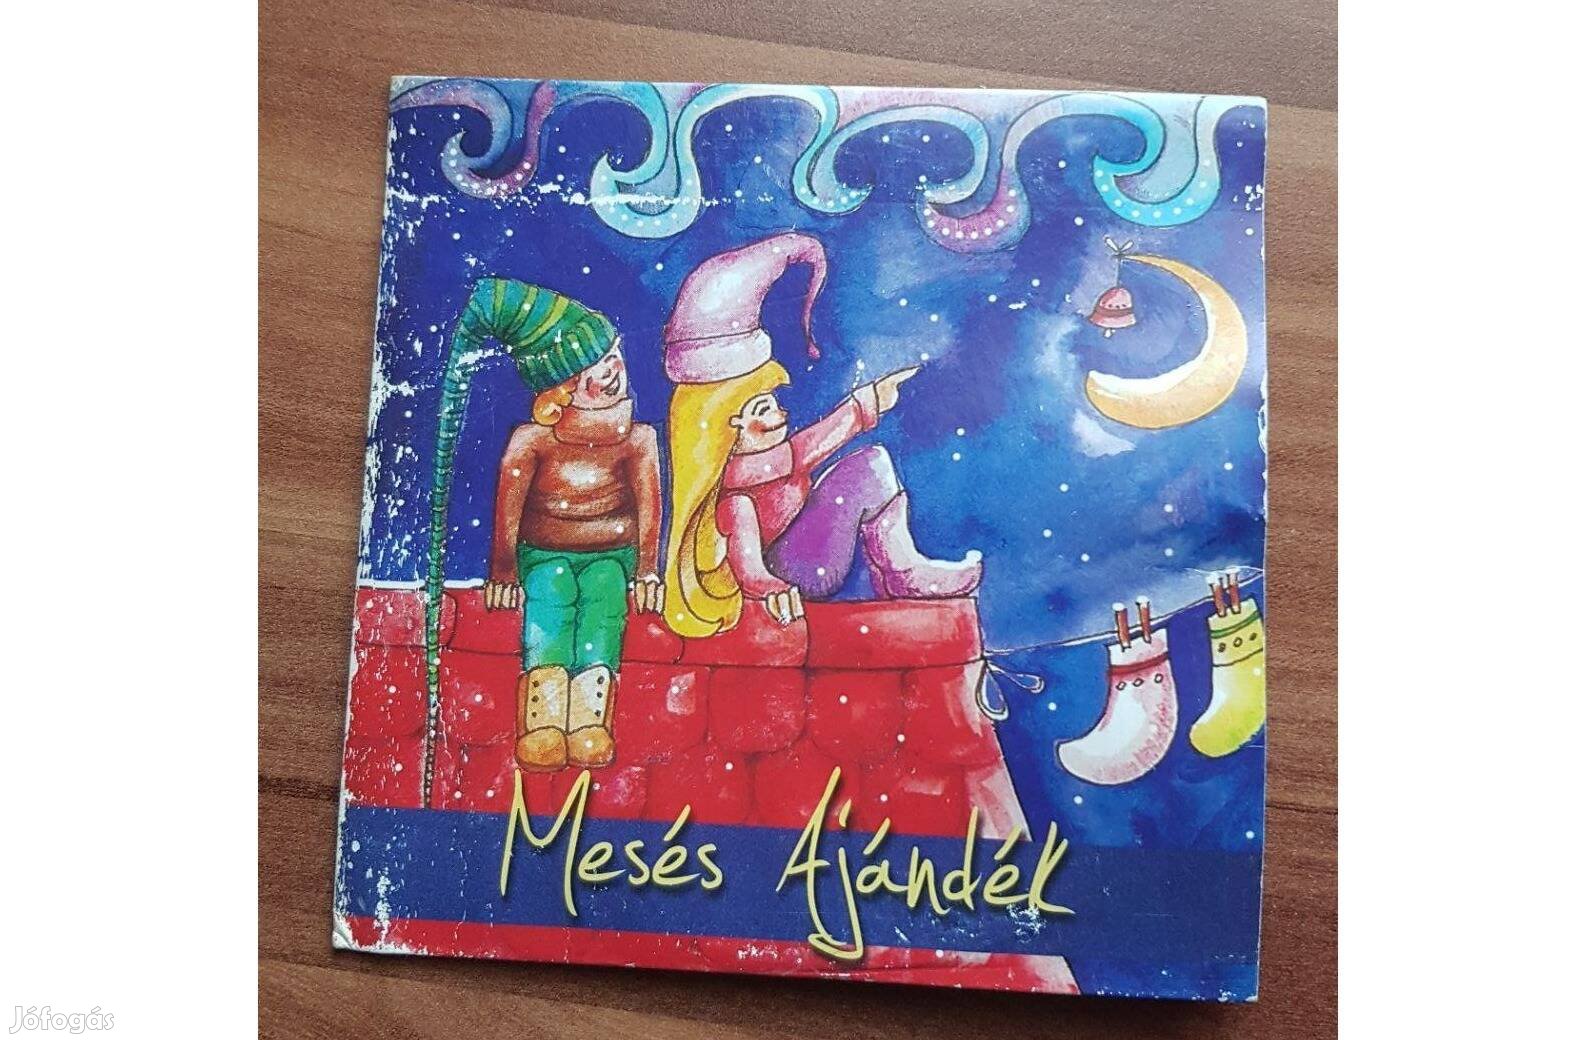 Mesés Ajándék - Mese cd